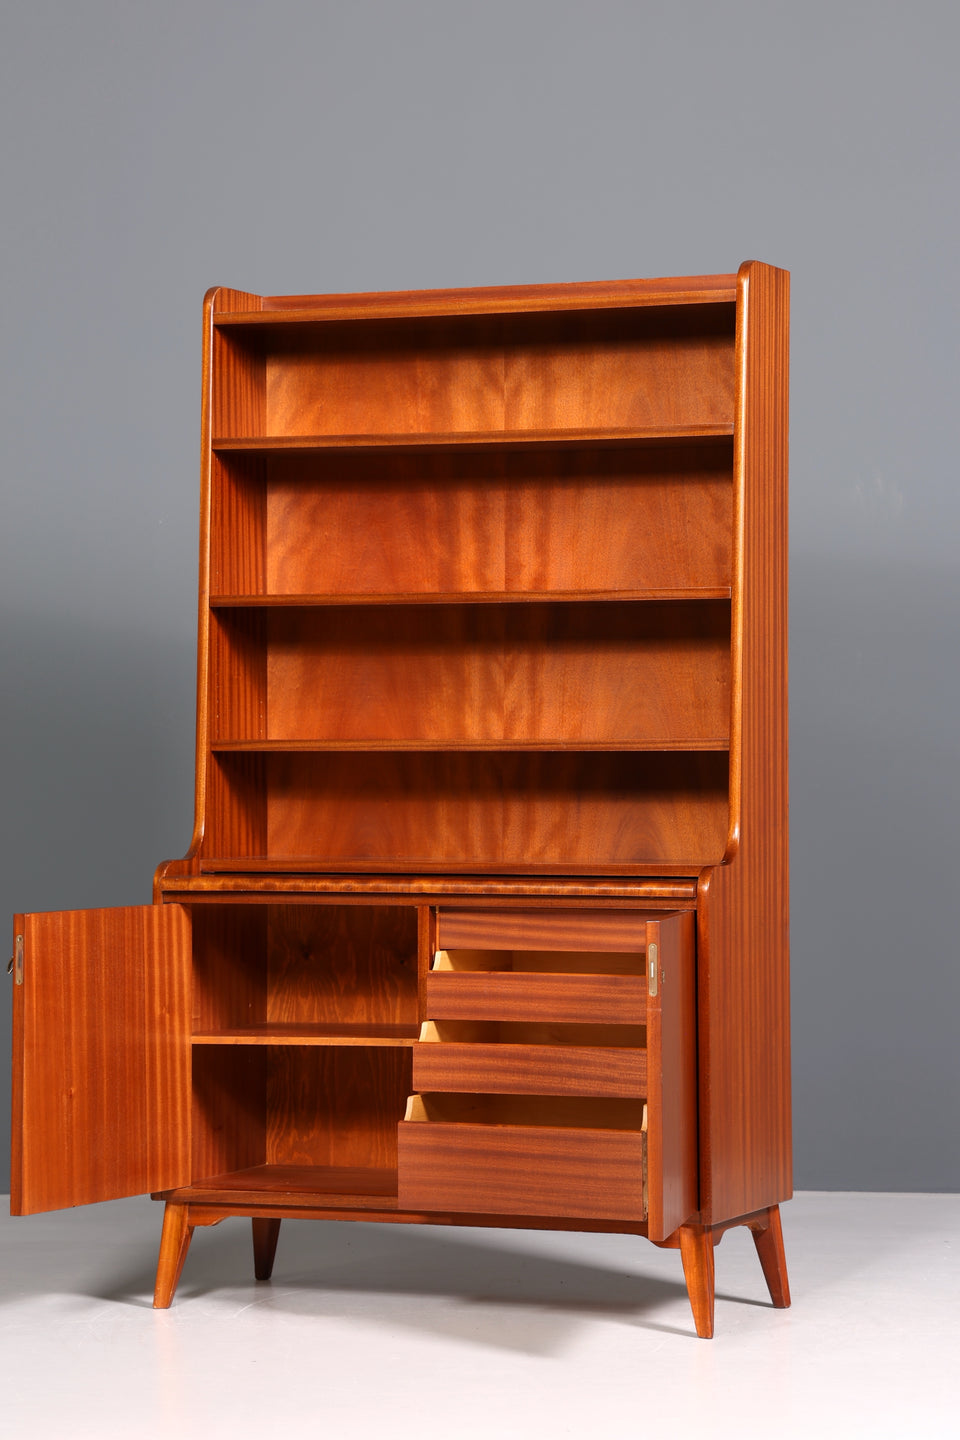 Wunderschöner Mid Century Schrank Bücherregal Vintage Sekretär Highboard Holz Regal 1 von 2